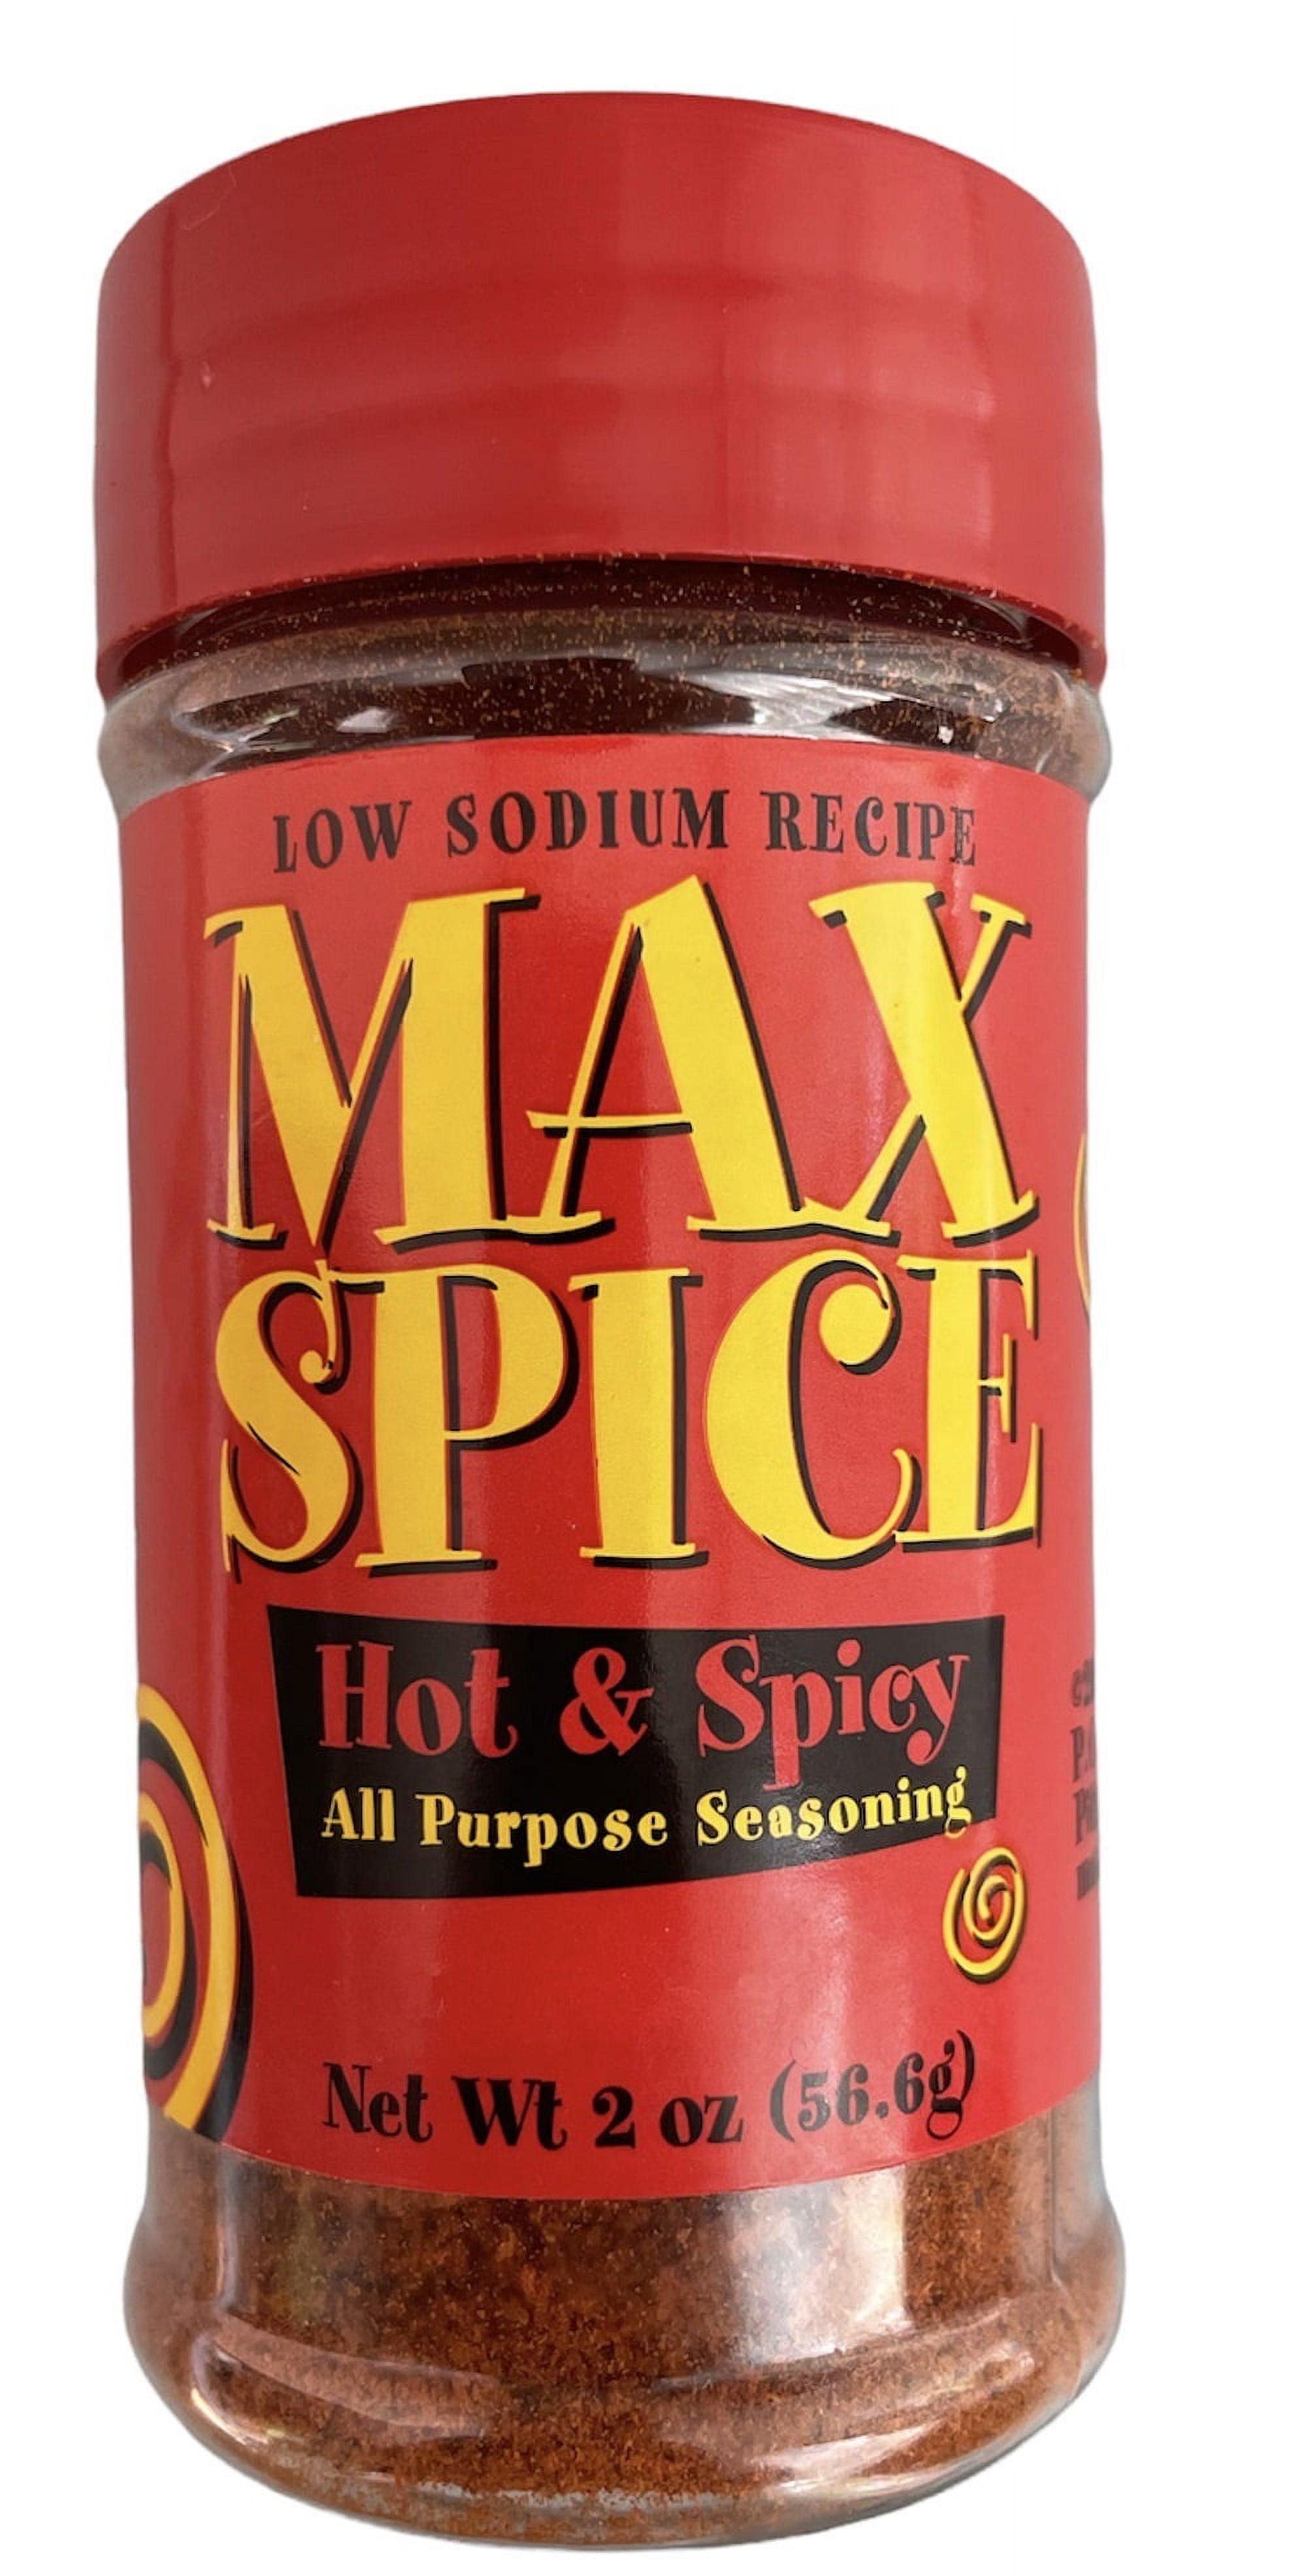 2) Dan-O's Spicy Seasoning - All Natural, Low Sodium, No Sugar (3.5 Oz)